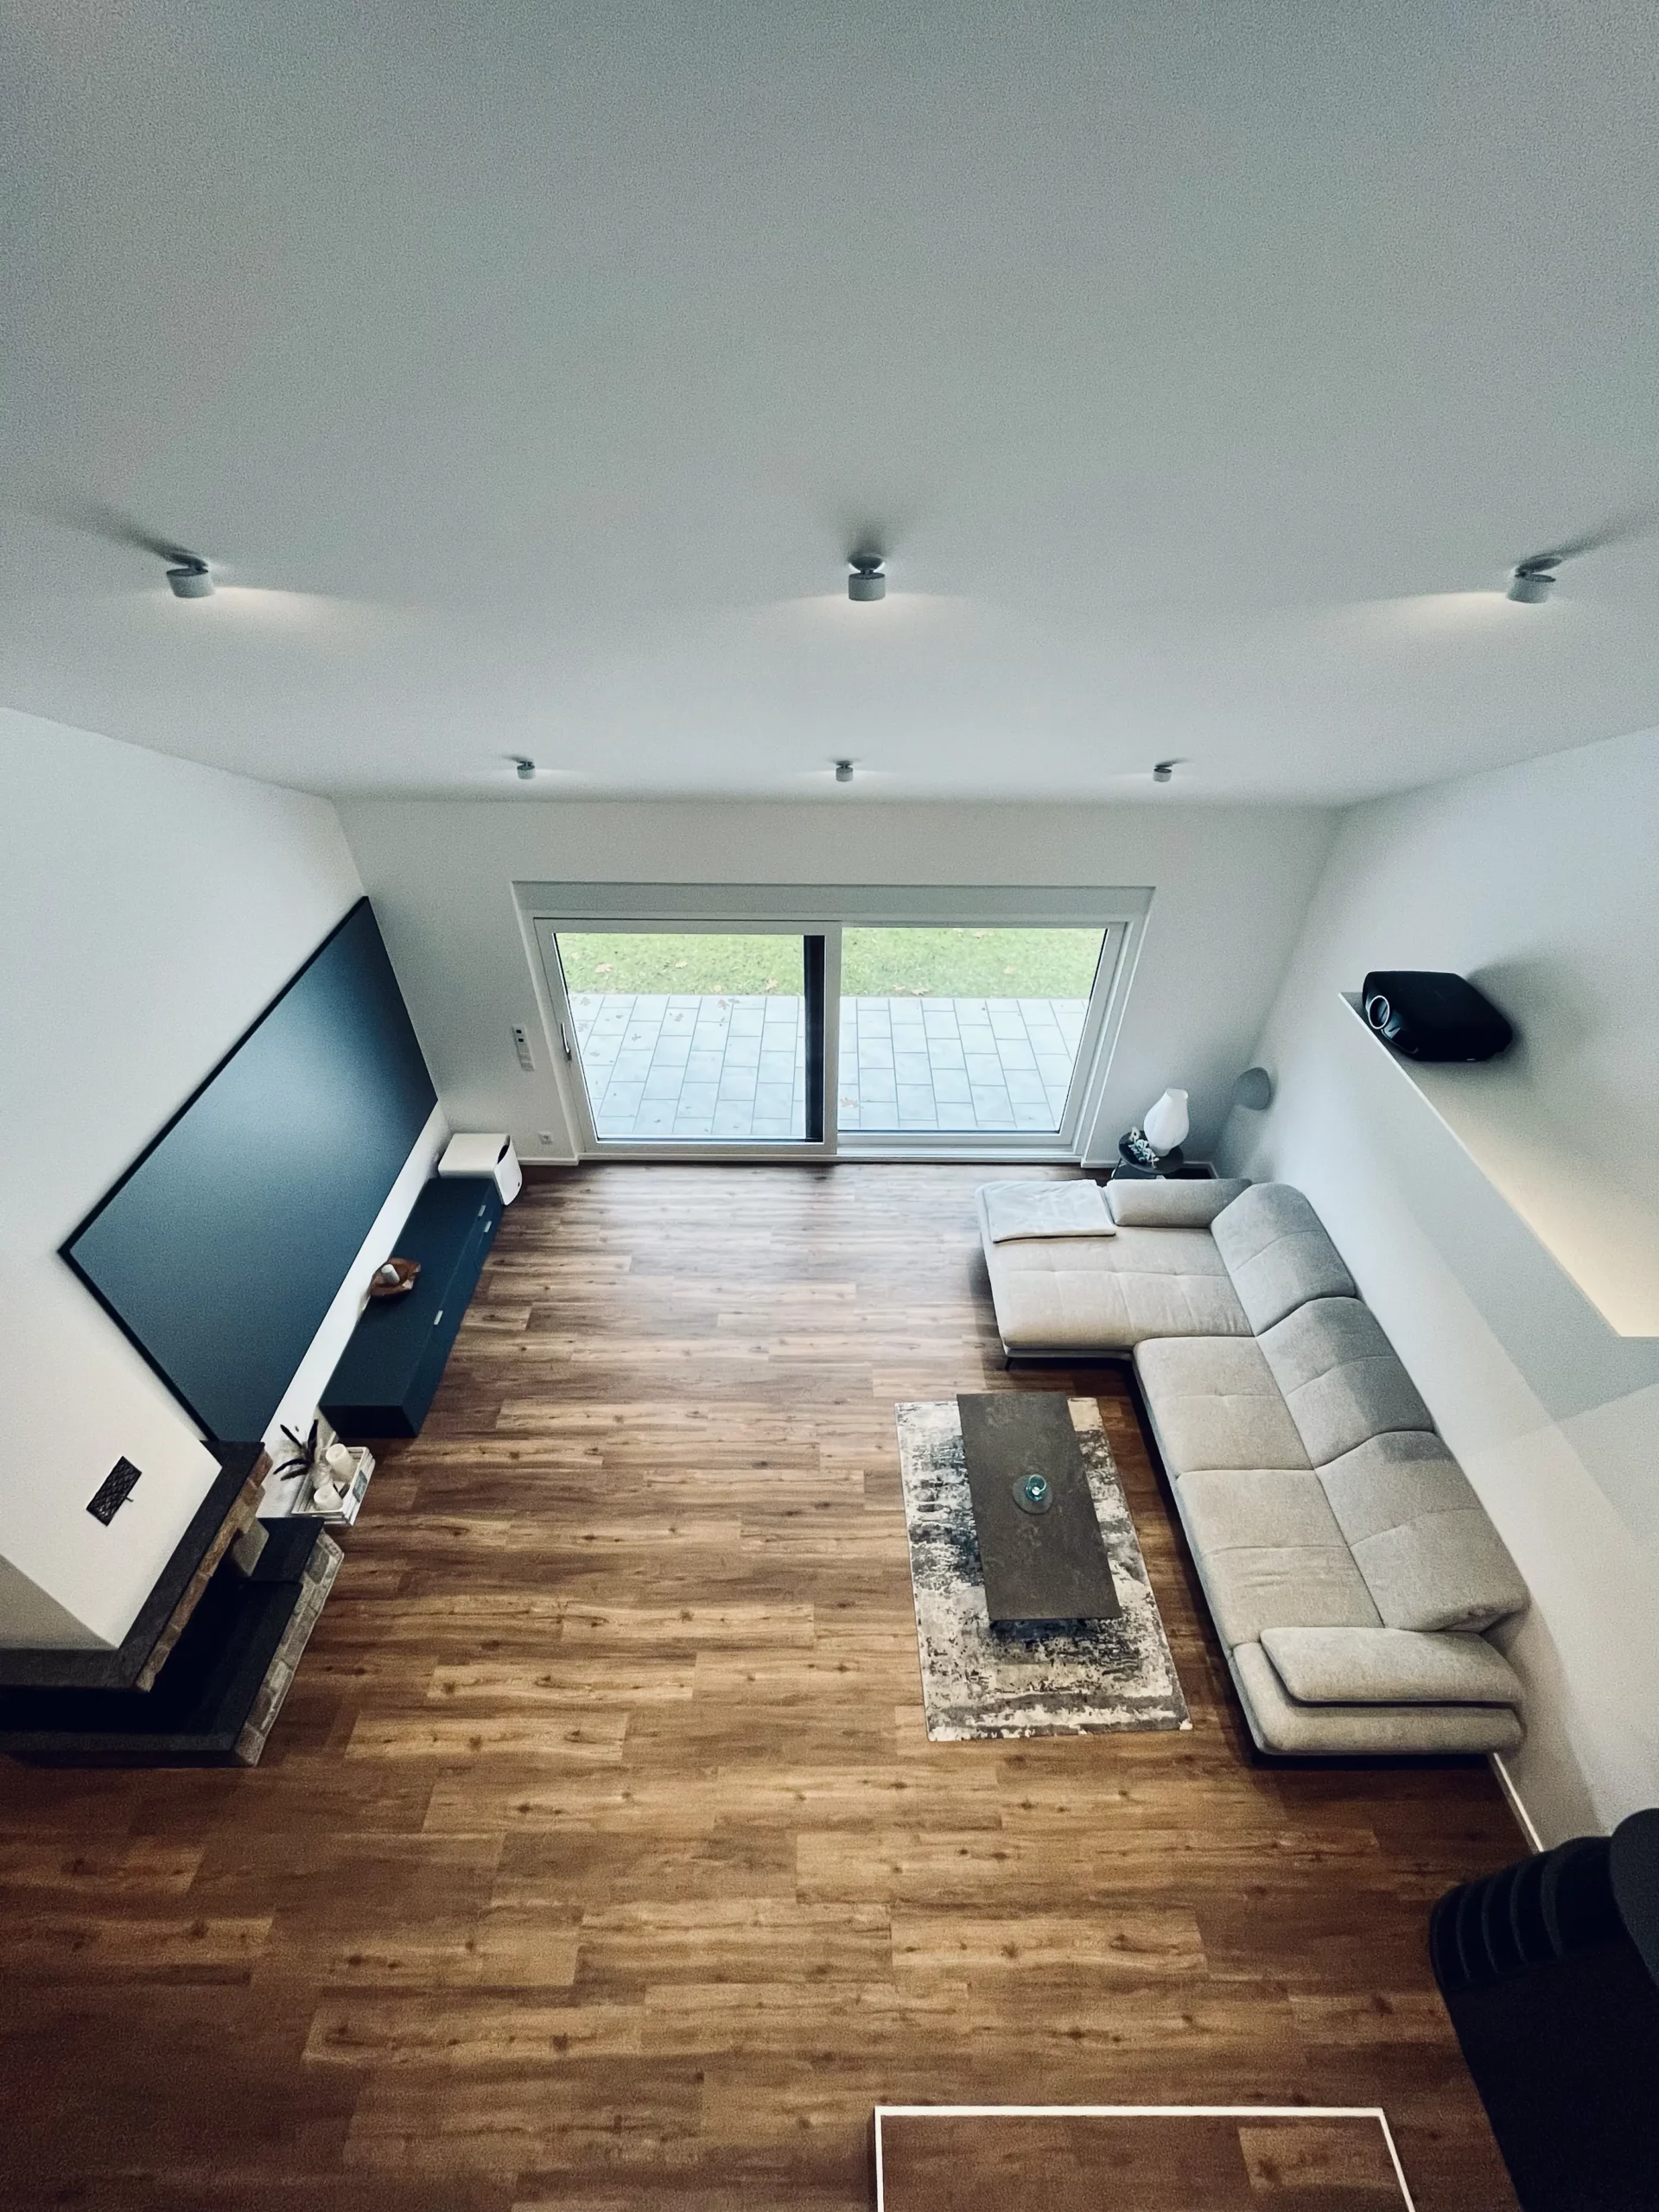 Heimkino im hellen Wohnzimmer mit ausgefeilten Lösungen für eine elegante Beamermontage, gebaut vom AVITECT Studio Rhein-Main.